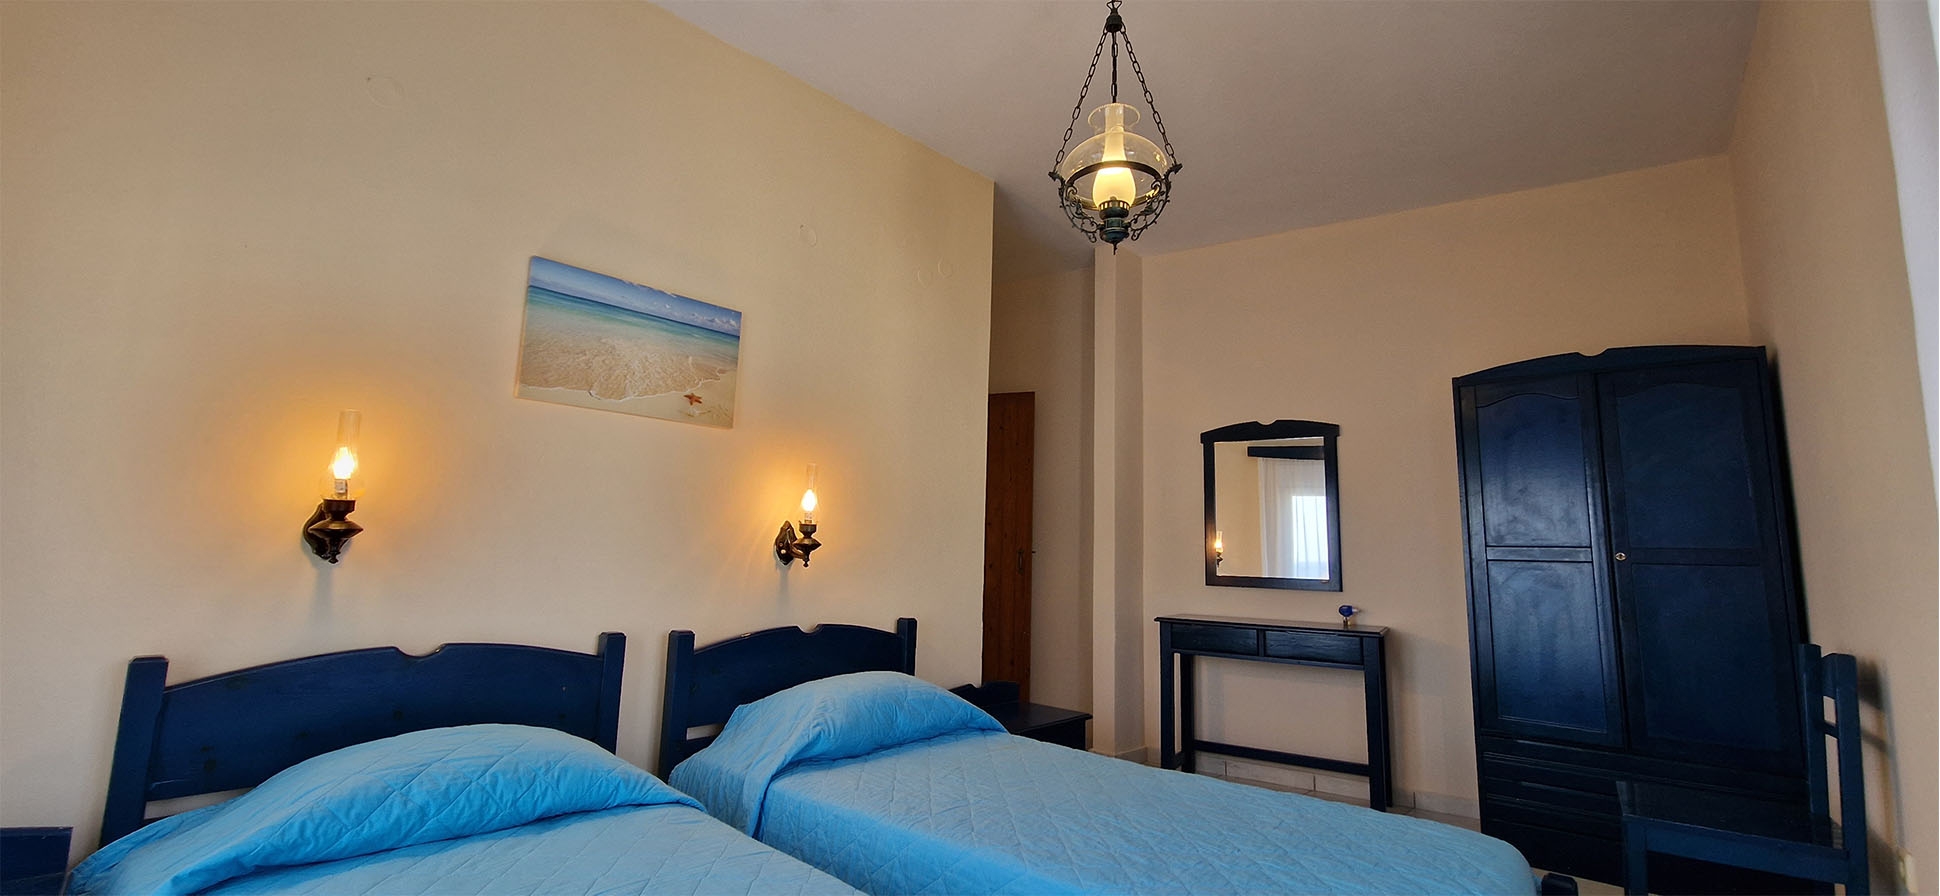 Δωμάτιο 2 - Ξενοδοχείο KatoYialos στα Ψαρά